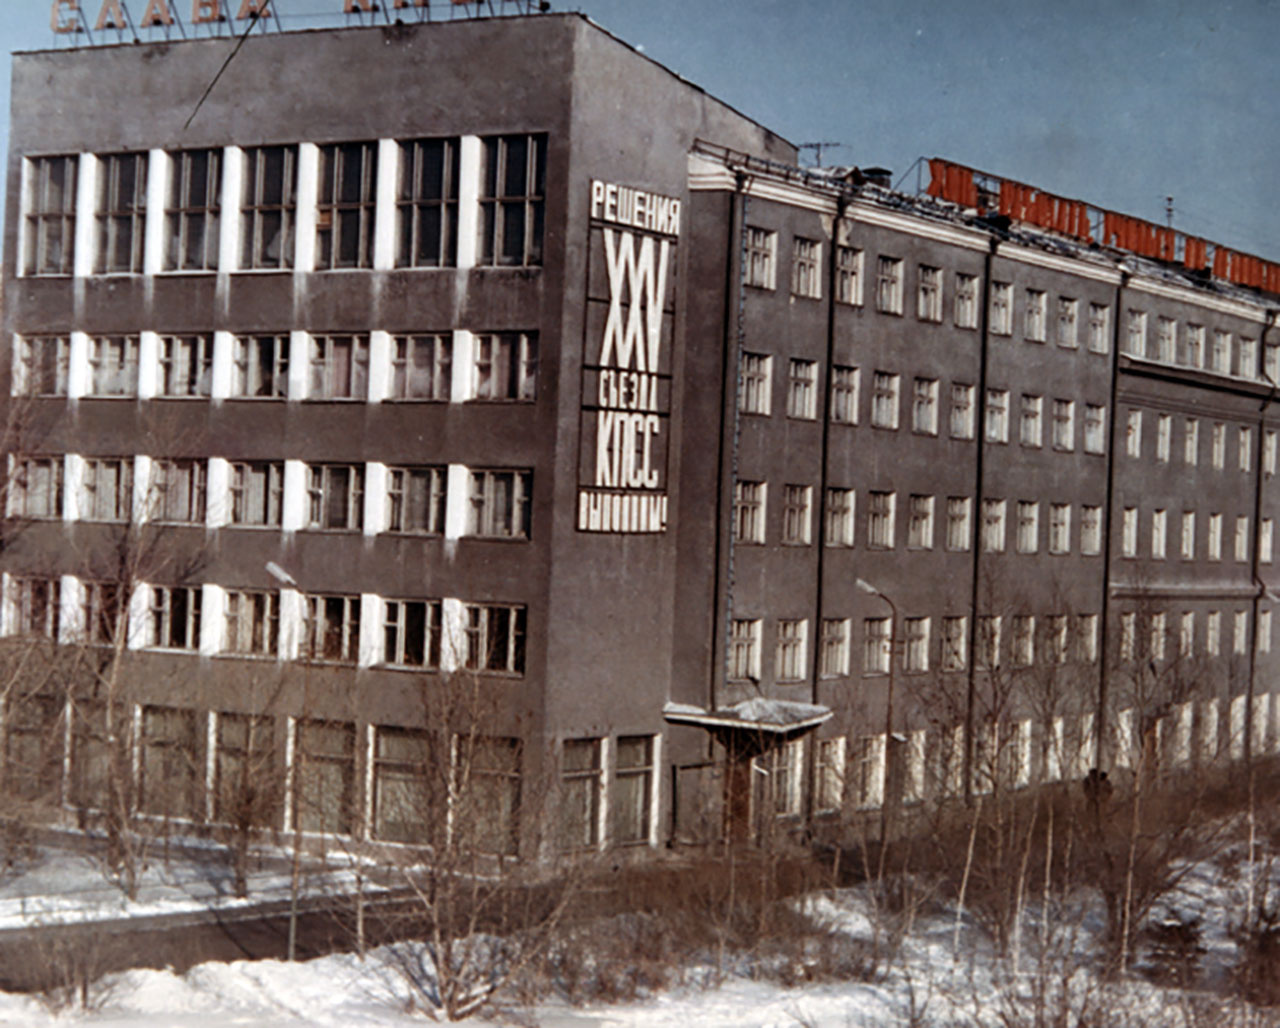 Раньше фасад здания украшали коммунистические лозунги